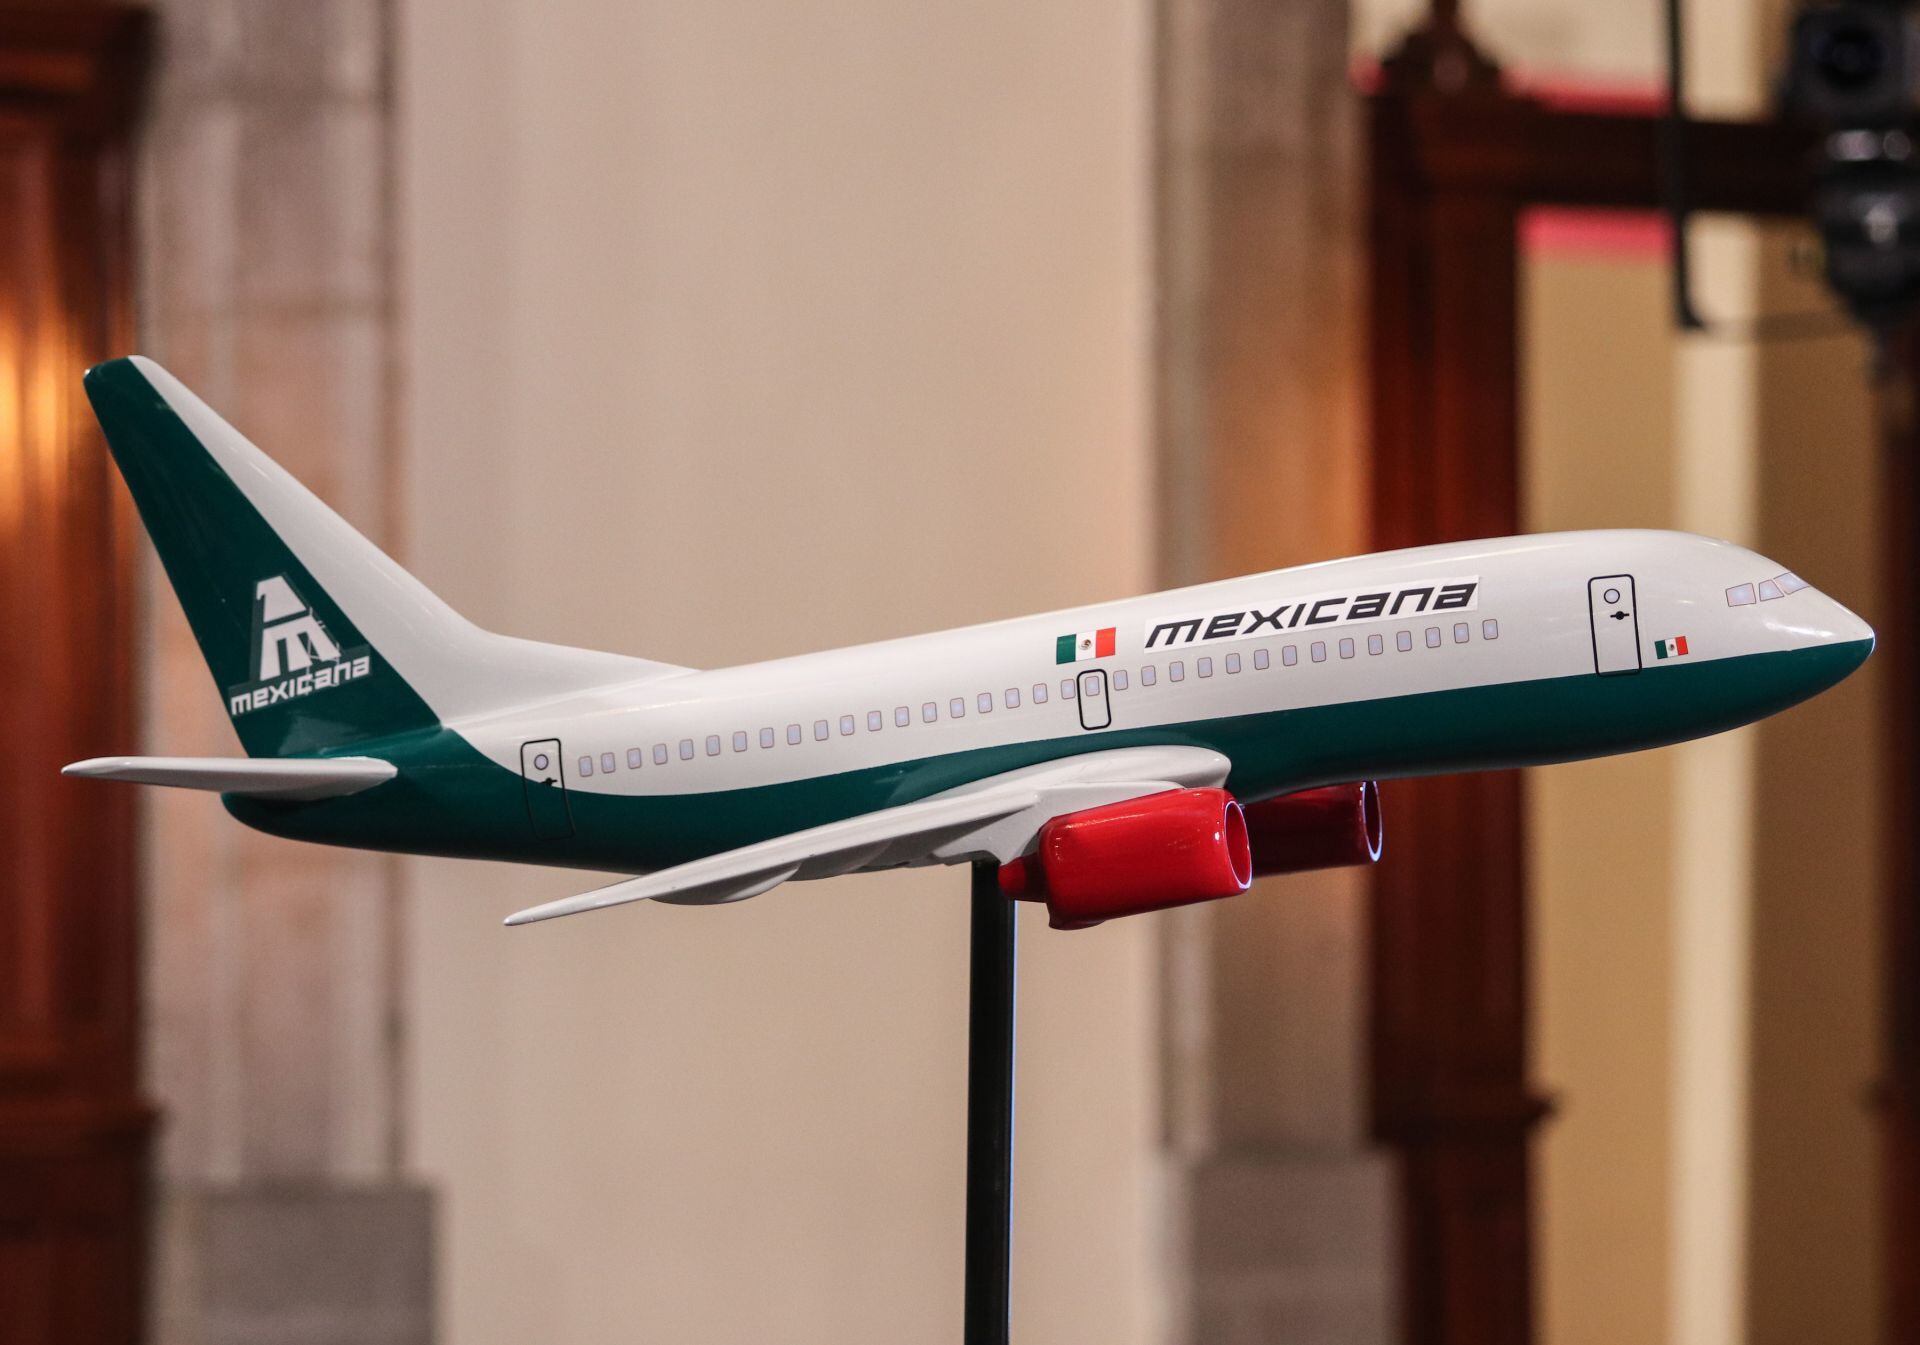 Boeing 737-800 que usará Mexicana de Aviación